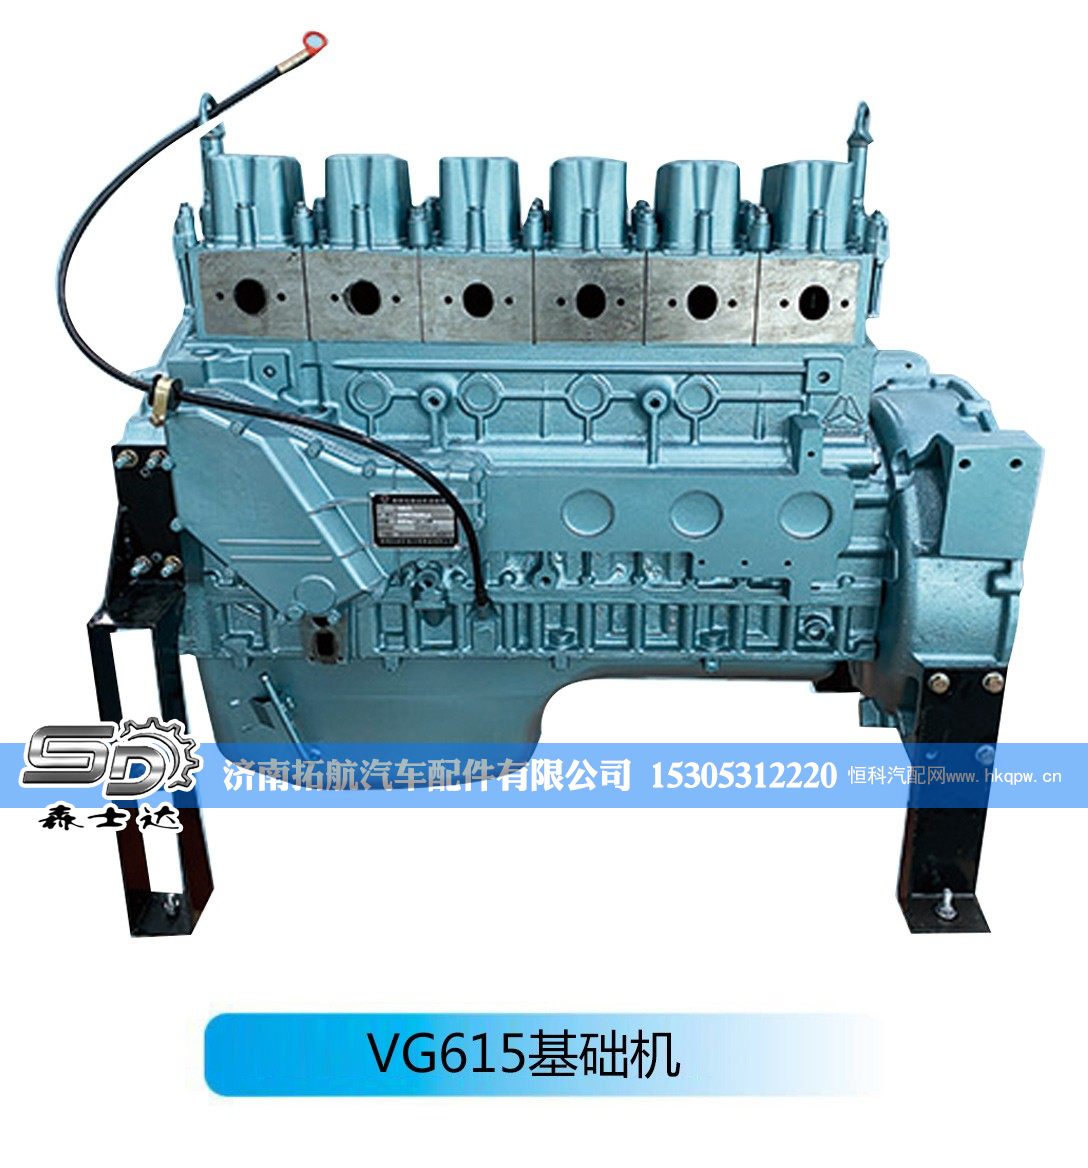 柴油发动机--VG615基础机【森士达】/